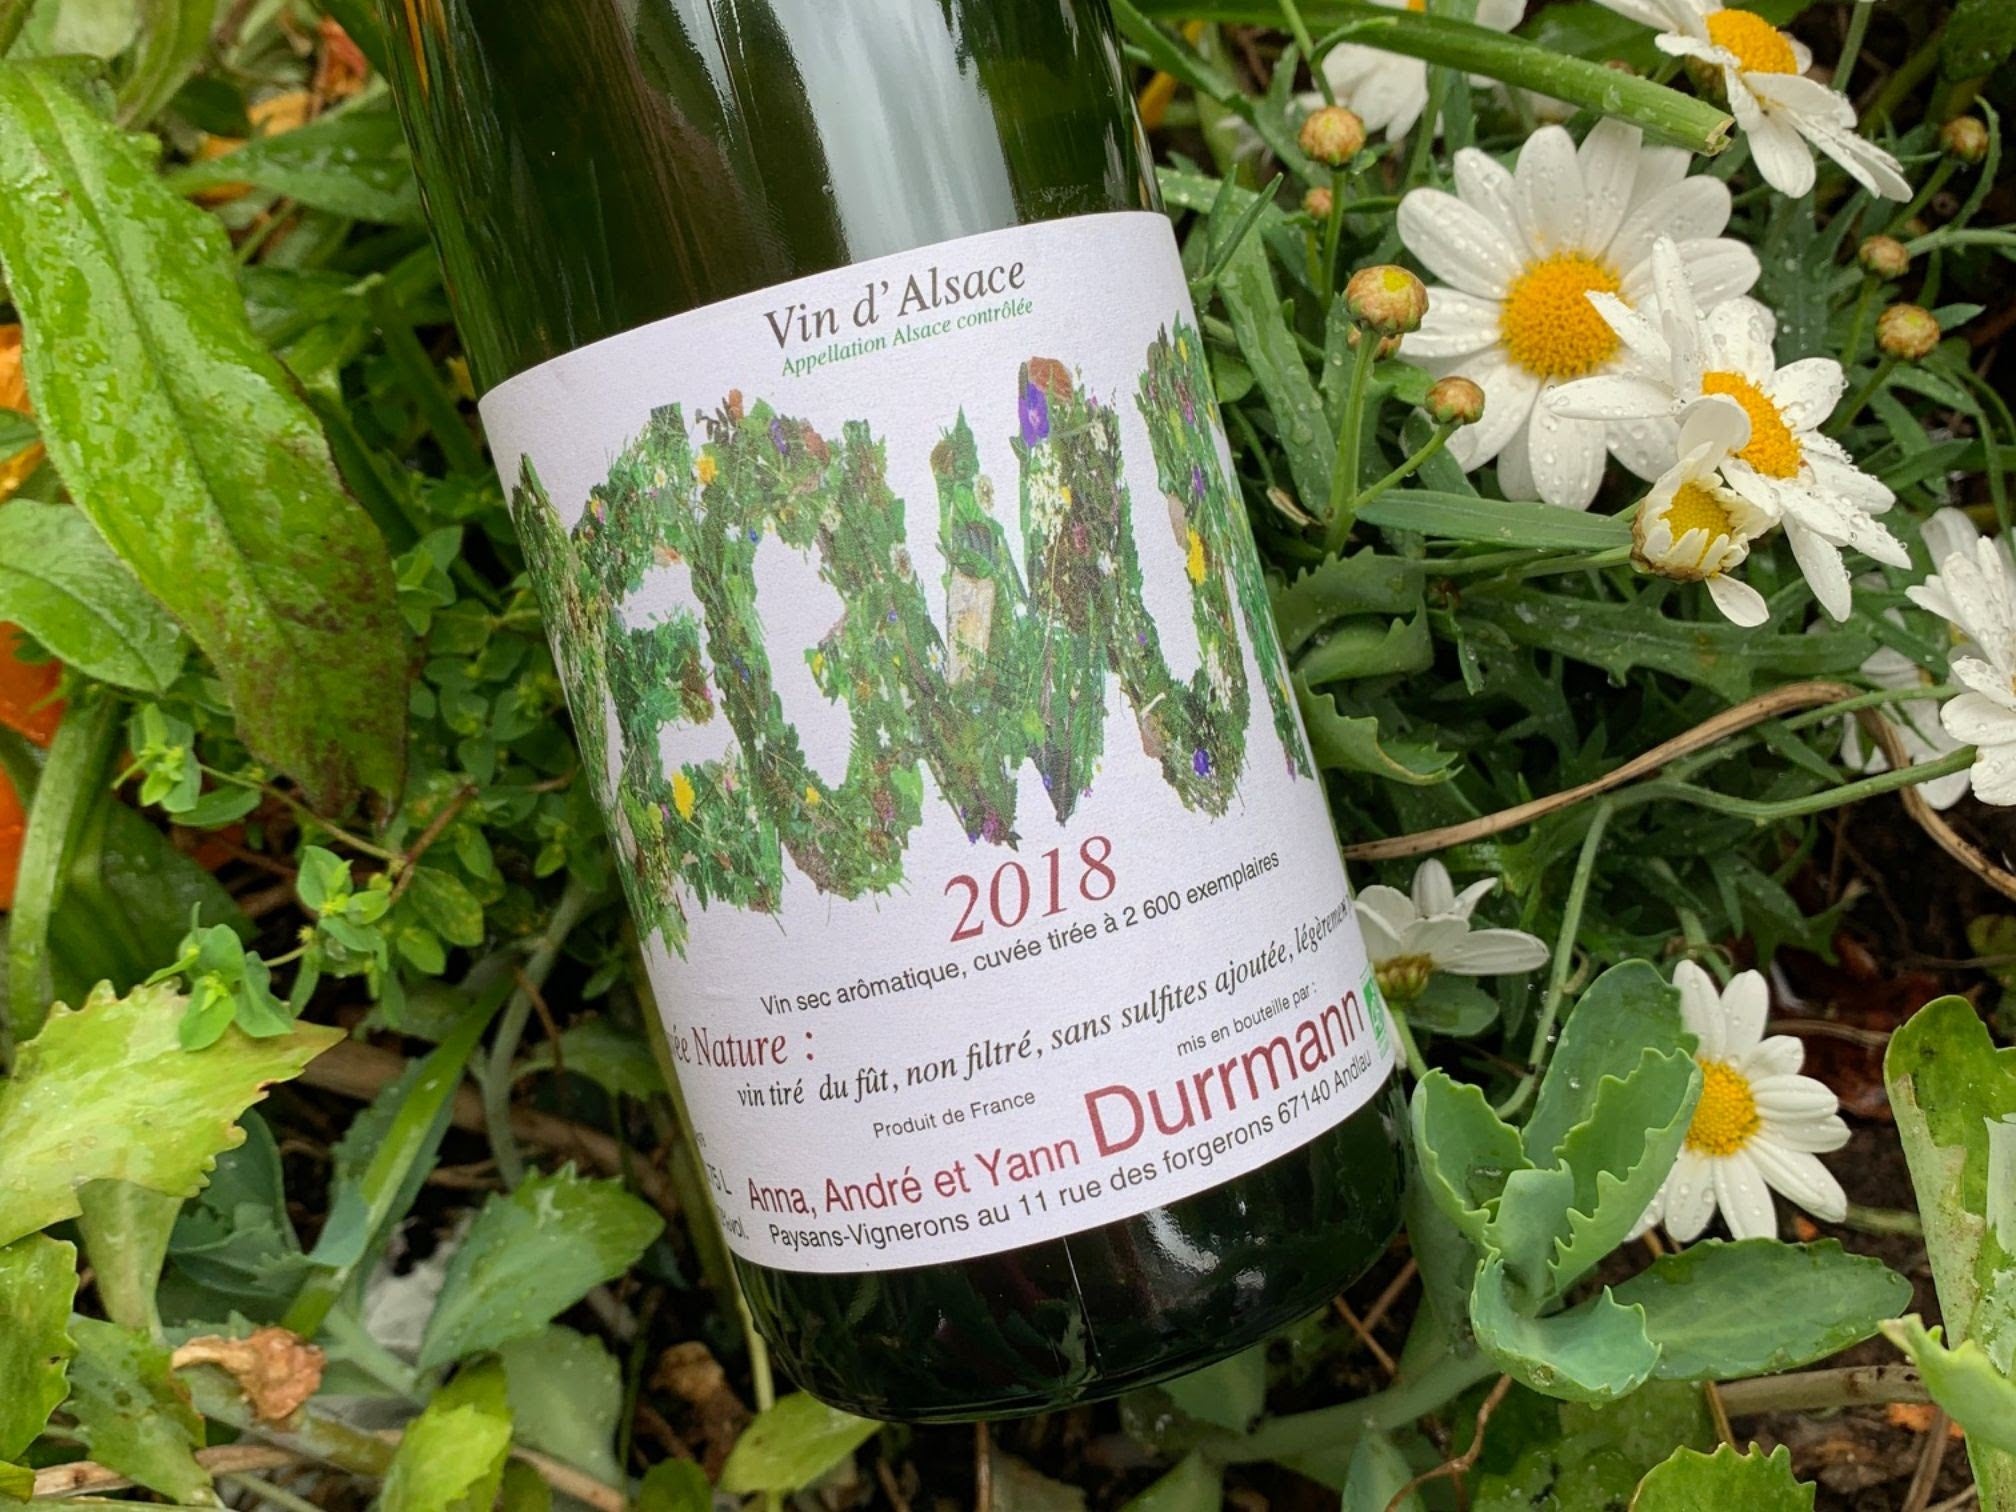 Durrmann Zegwur GewürztraminerVin d'Alsace 2018 13% (750ml)-Hop Burns & Black